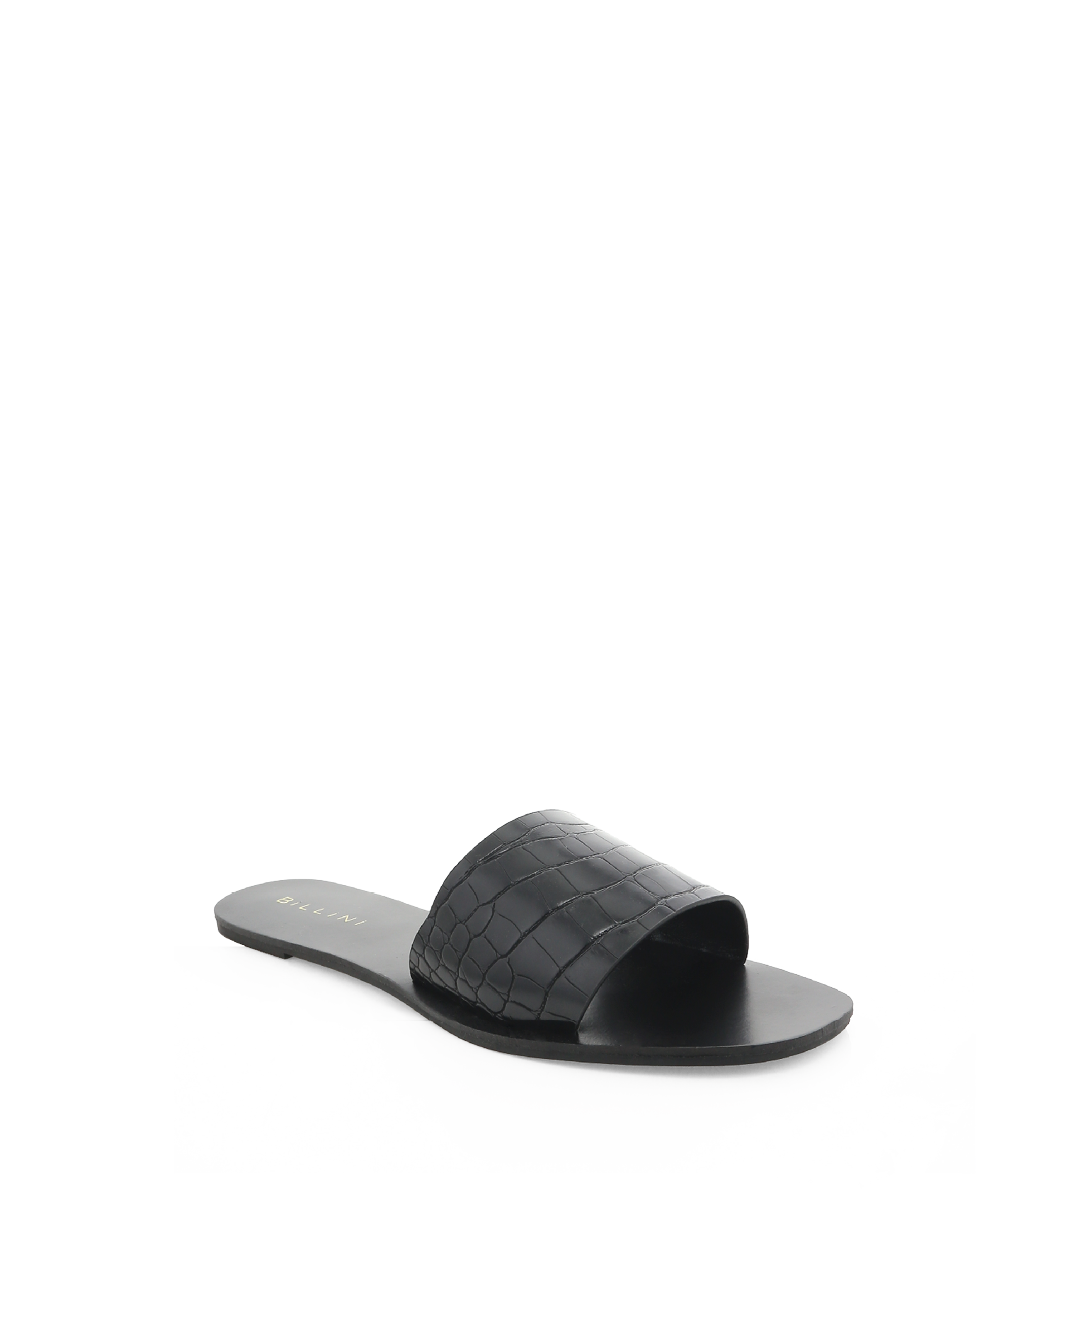 HENRIK - BLACK CROC-Sandals-Billini-Billini